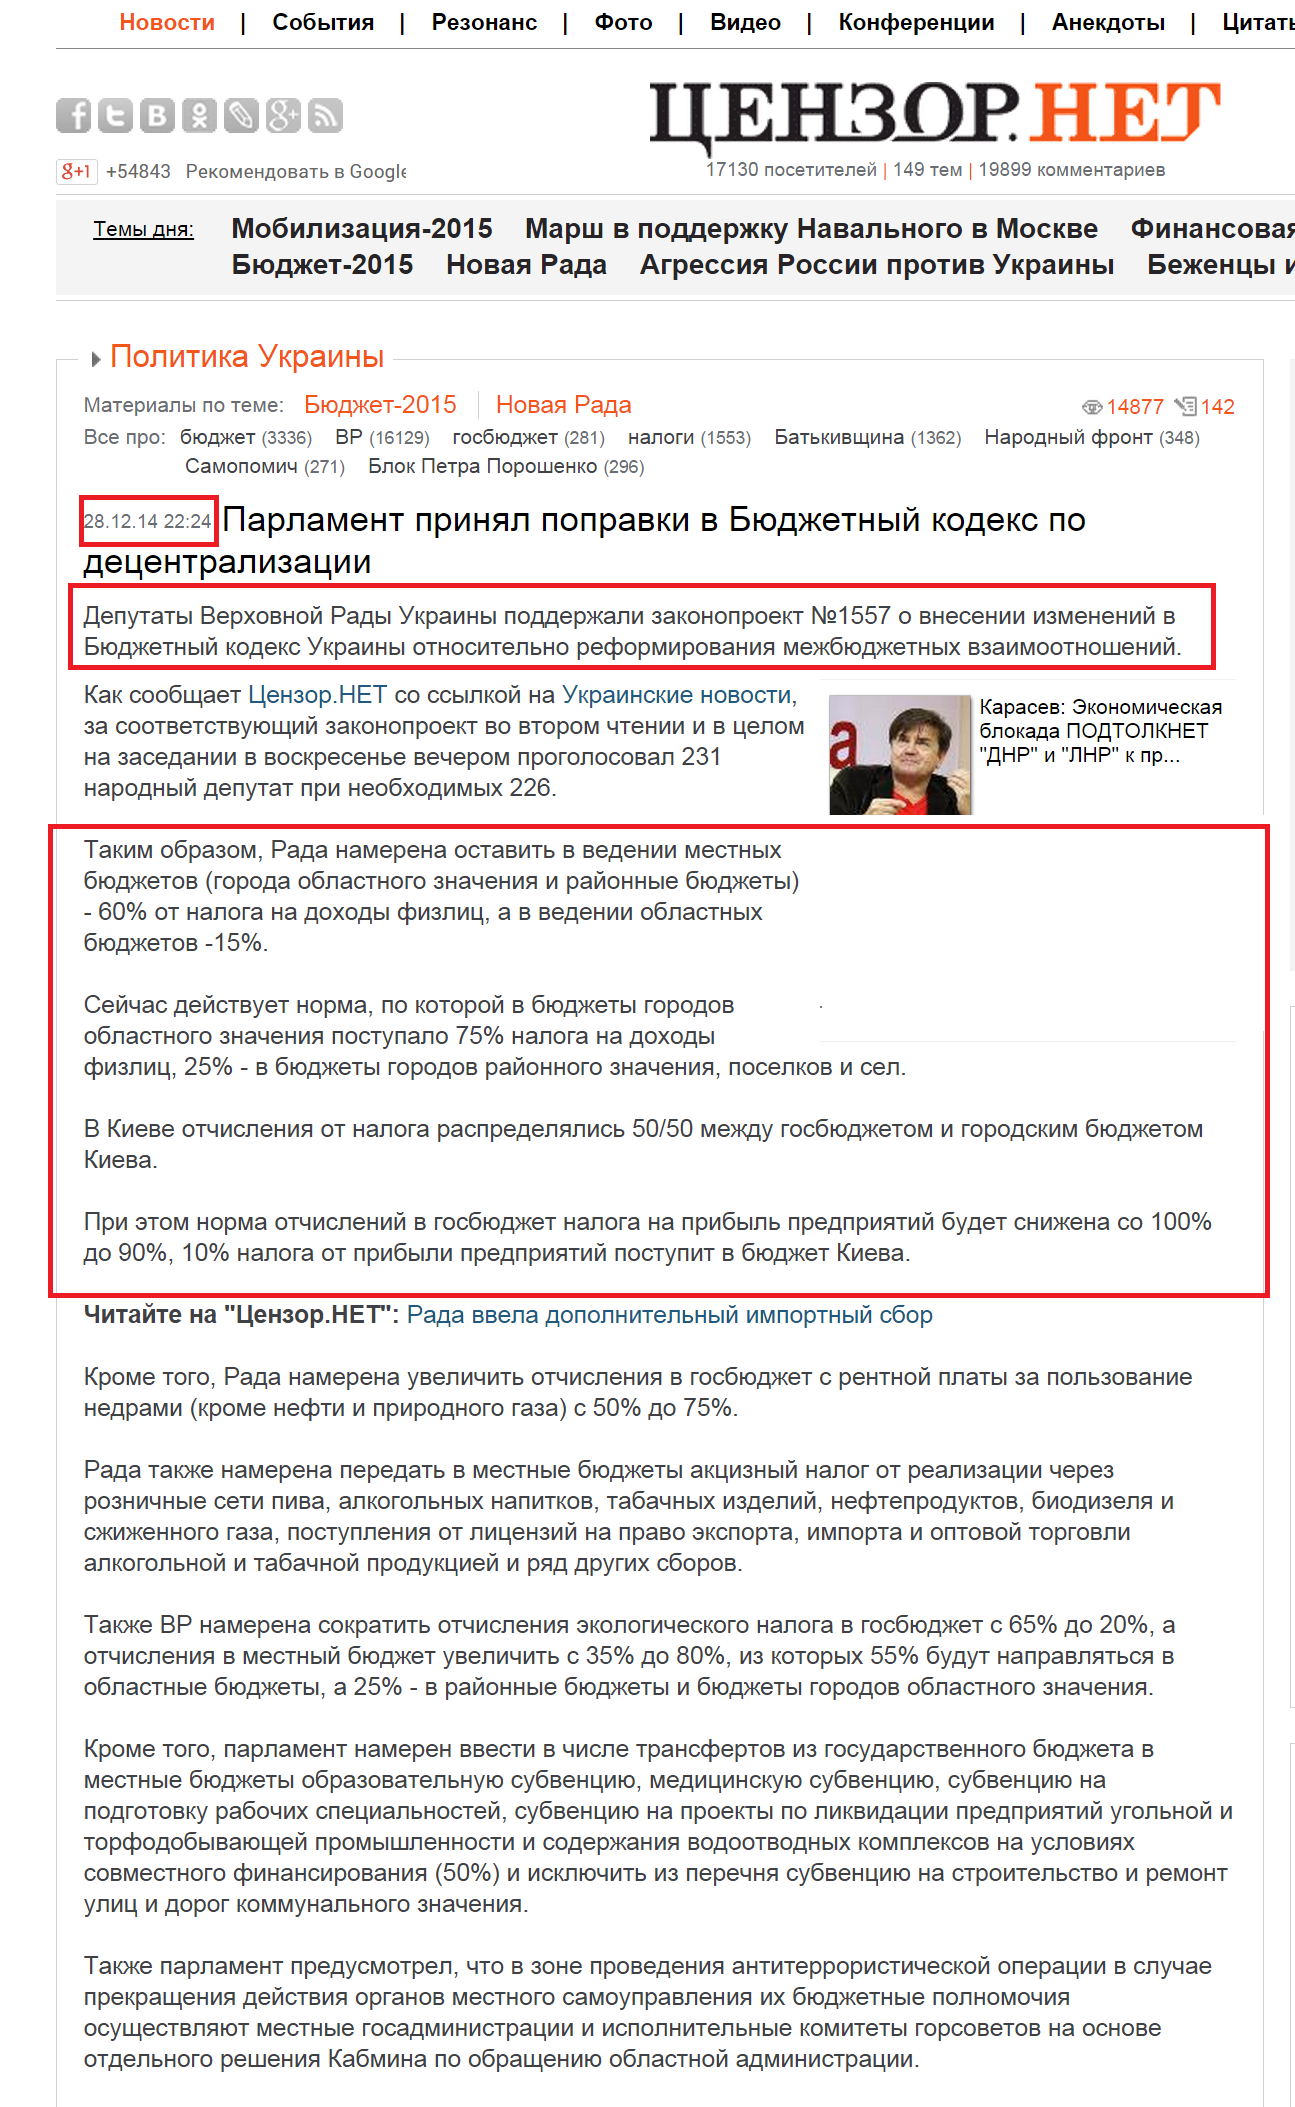 http://censor.net.ua/news/318386/parlament_prinyal_popravki_v_byudjetnyyi_kodeks_po_detsentralizatsii